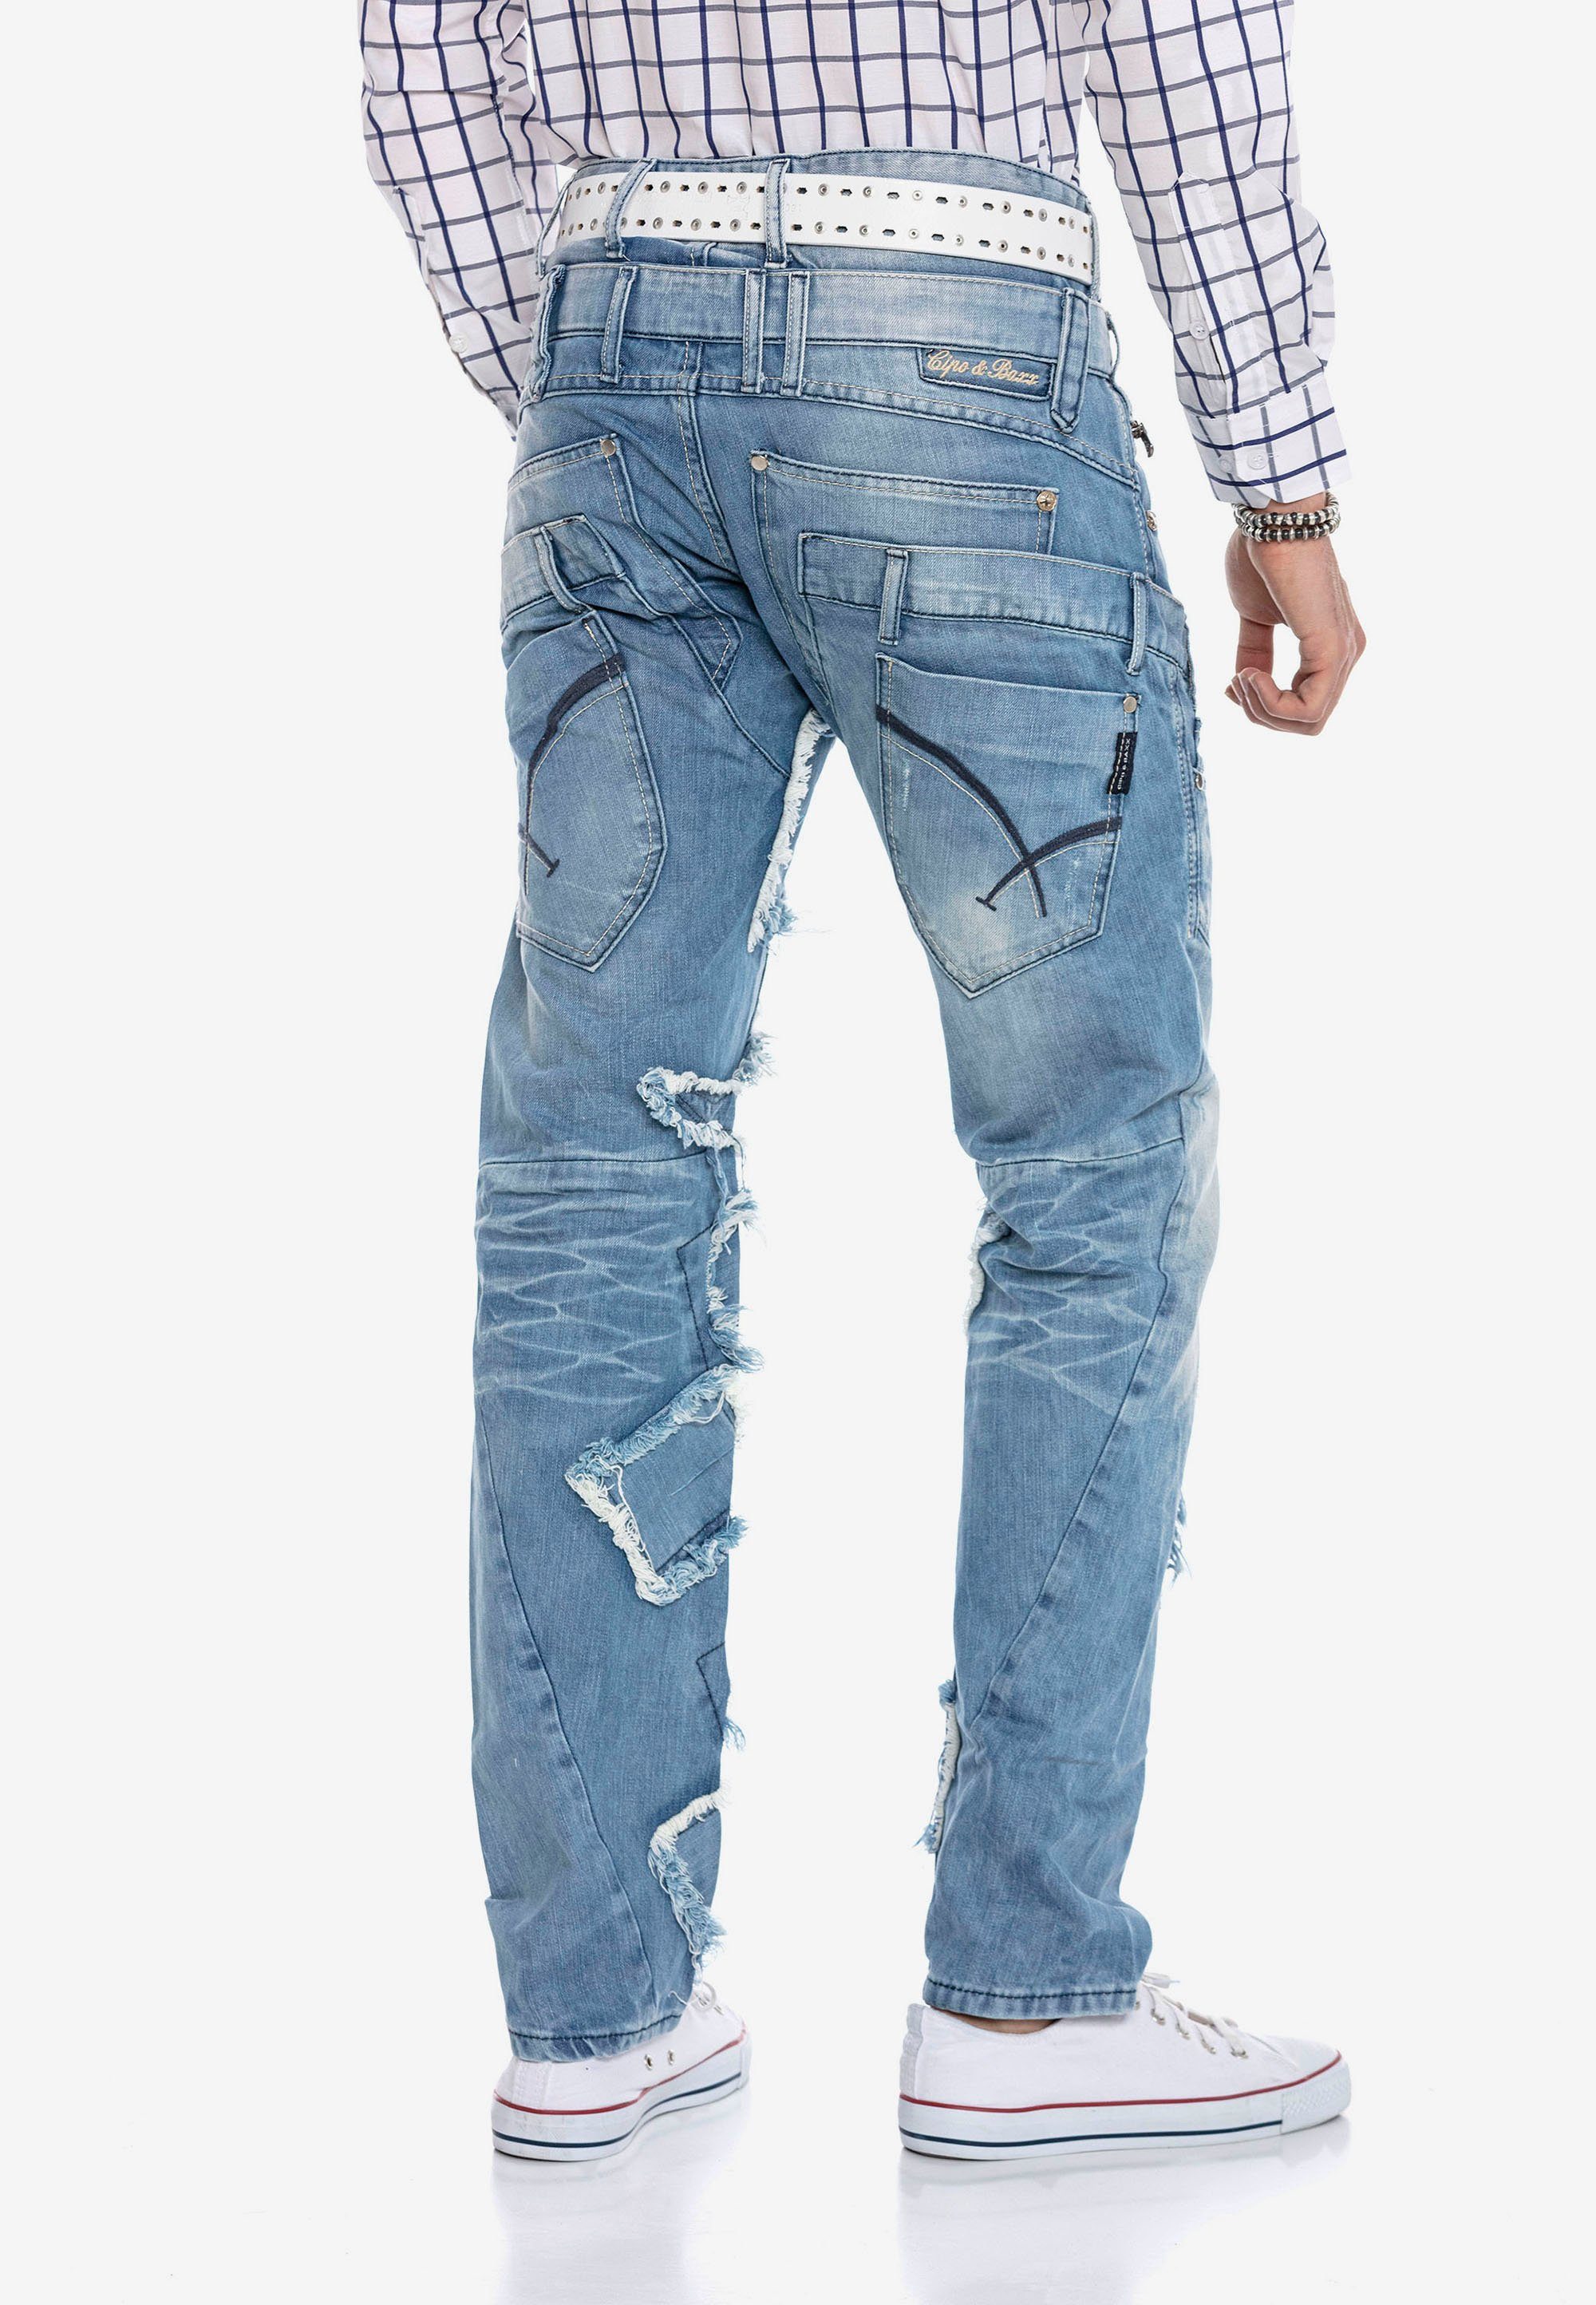 Baxx Patchwork-Design im Bequeme Jeans trendigen & Cipo